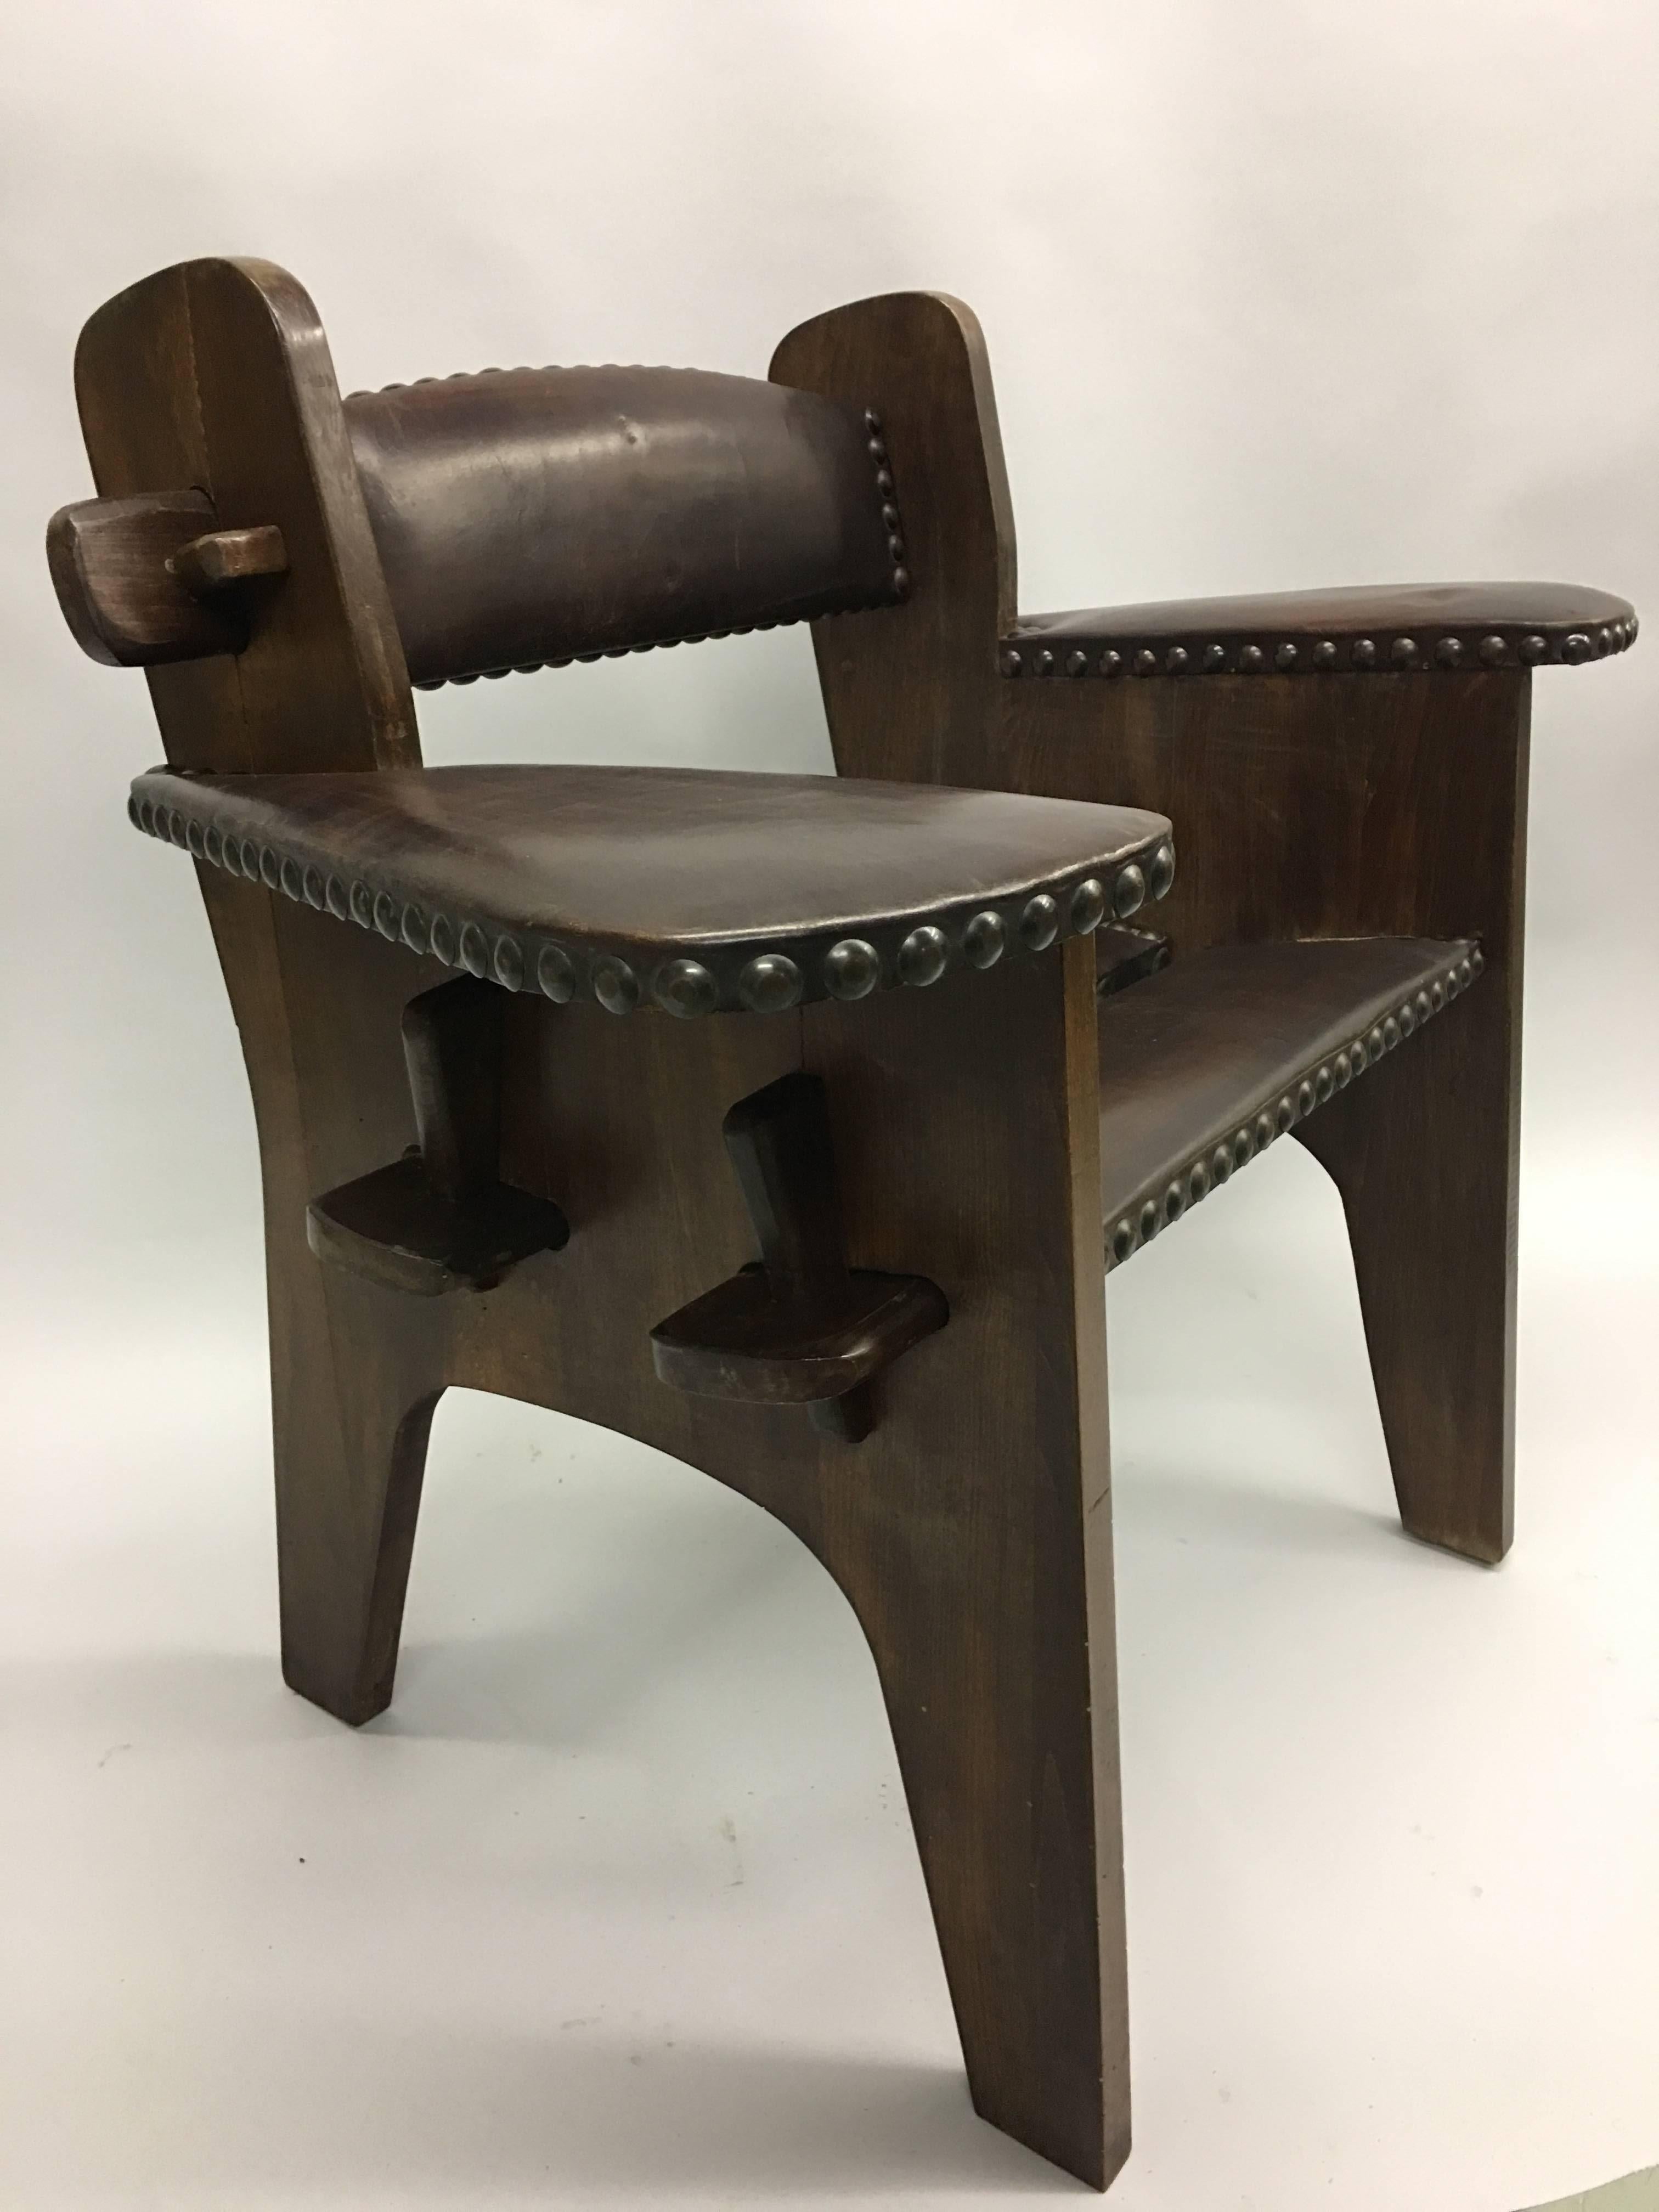 Seltenes, einzigartiges Paar italienischer Sessel der frühen Moderne, die Giacomo Balla zugeschrieben werden. Die Stühle vereinen futuristische Ästhetik mit dem Stil des Arts & Crafts.

Für die Stücke werden typische MATERIALIEN des Kunstgewerbes